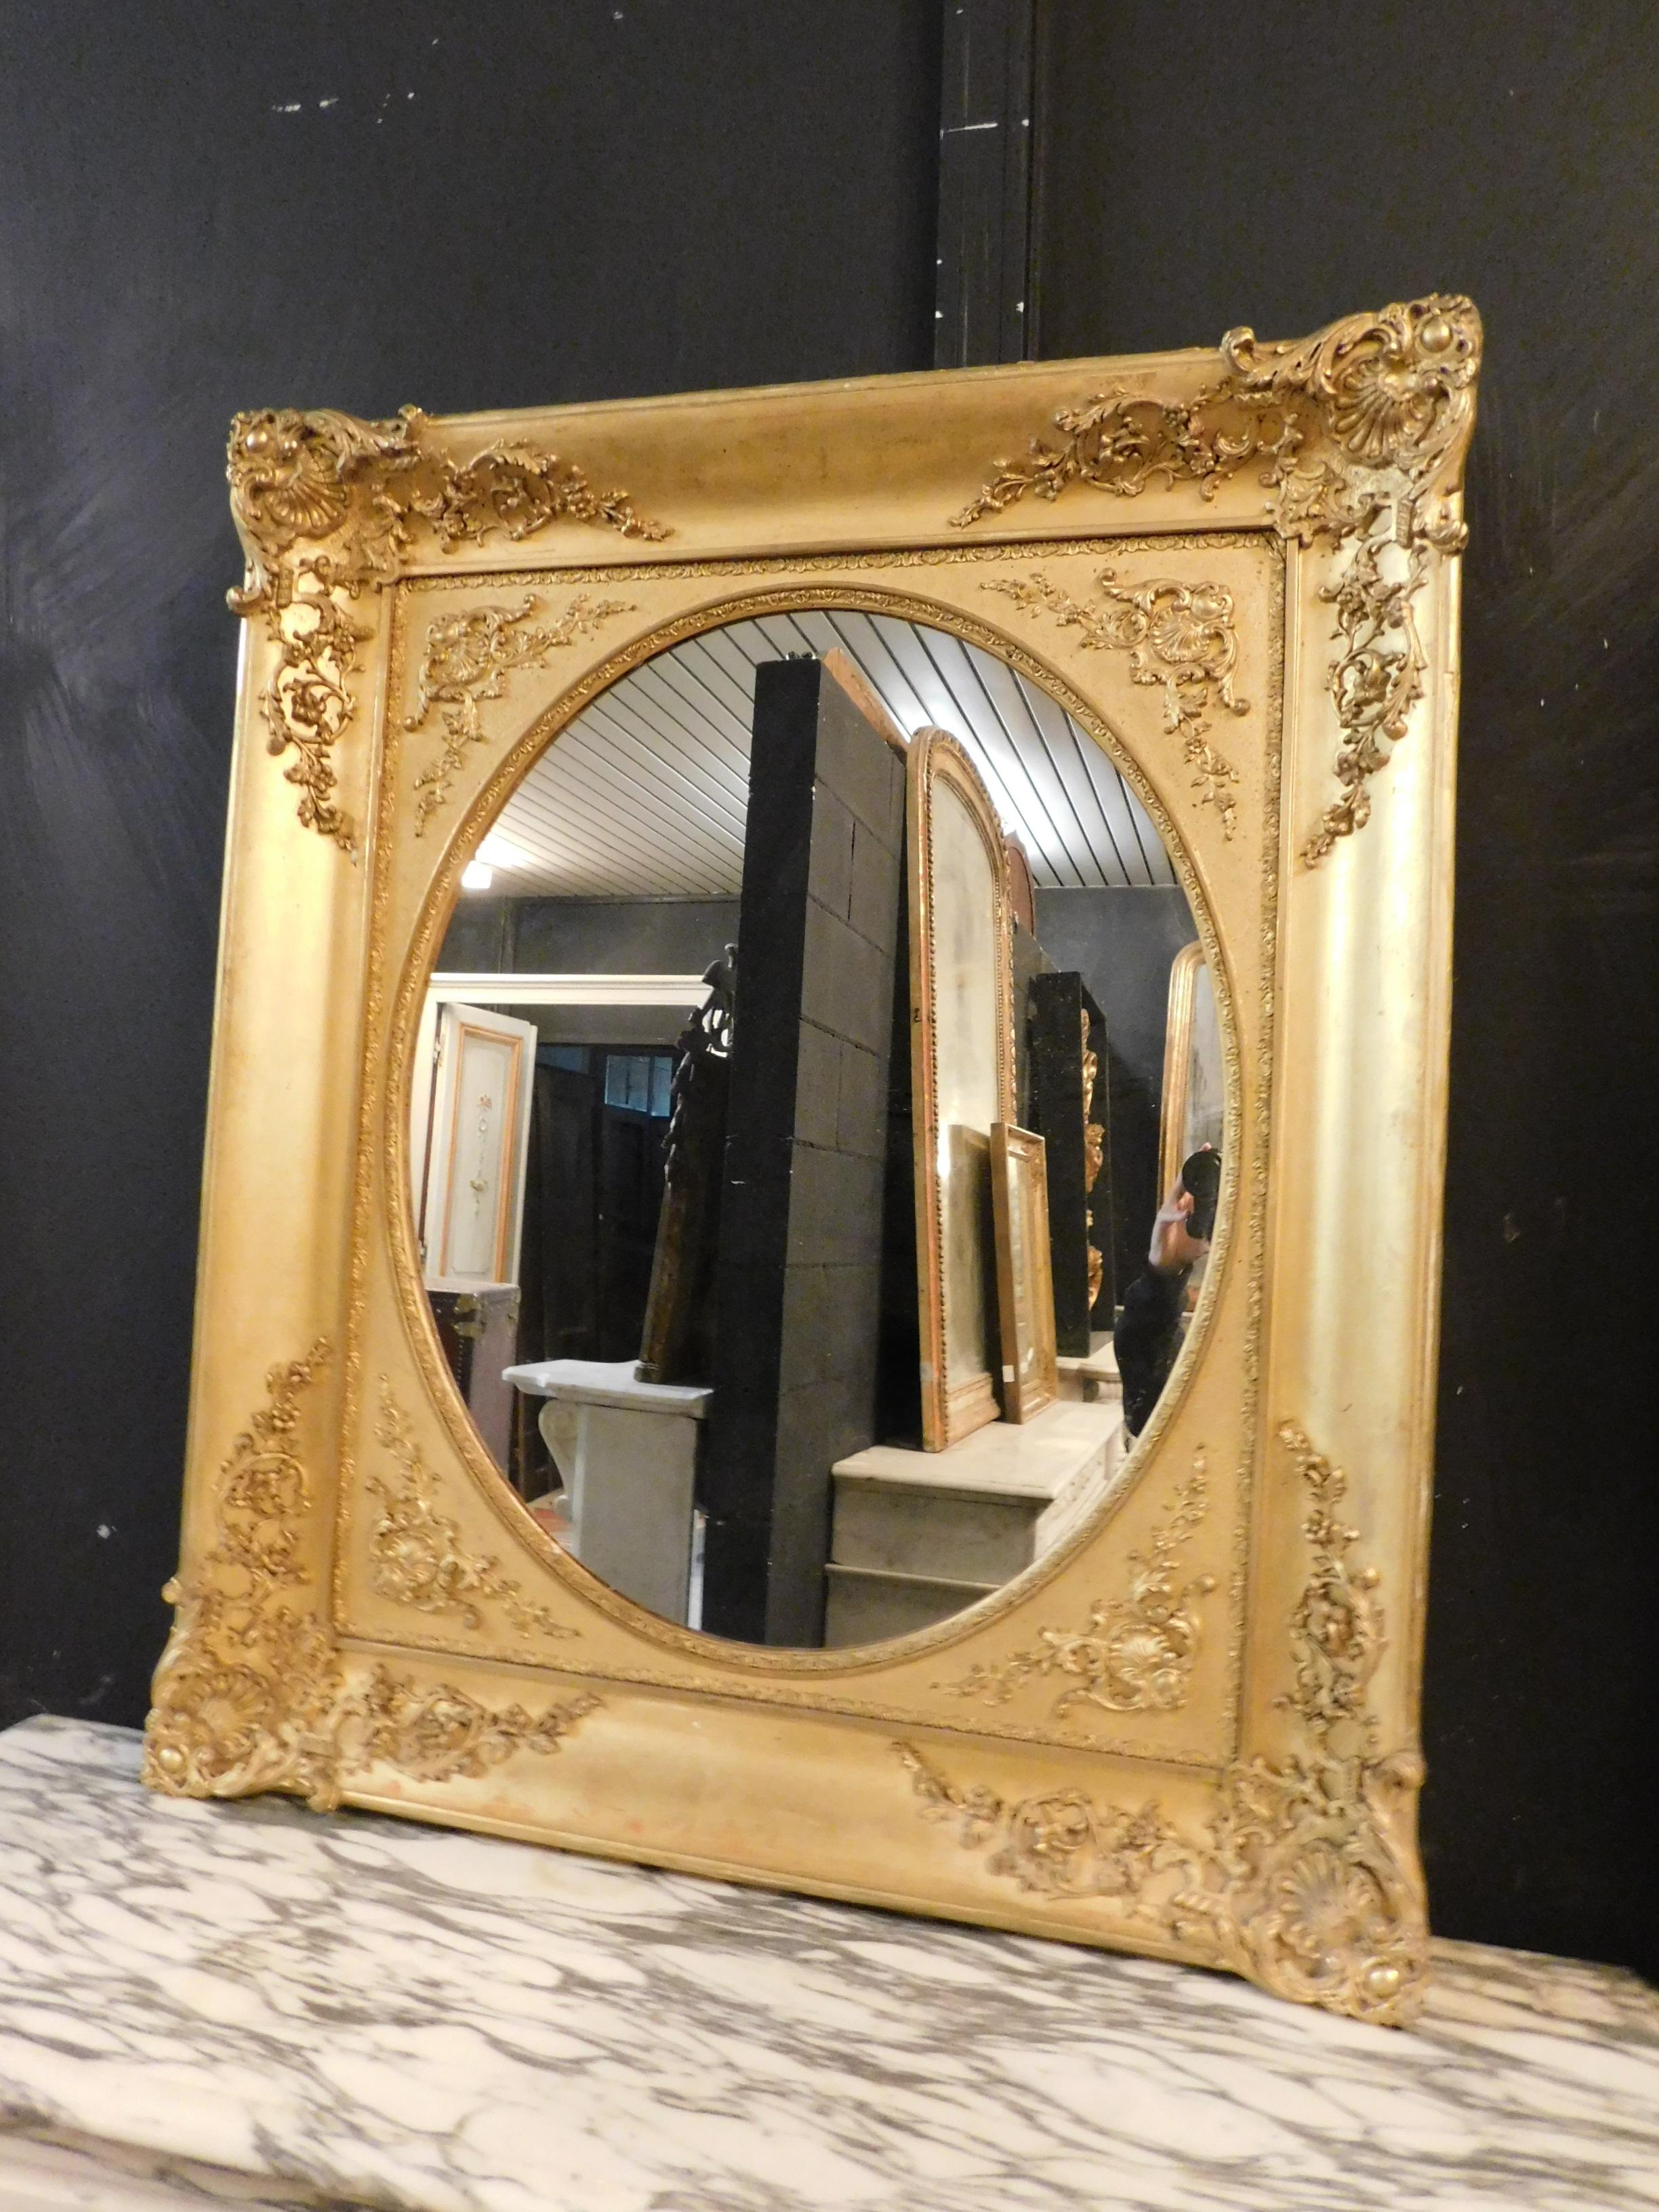 Antike goldene Spiegel, reich von Hand geschnitzt mit schönen Details in den Rahmen, rechteckig in Form, aber mit ovalen Spiegel, aus dem 19. Jahrhundert, aus Piemont (Italien), ideal, um in vielen Umgebungen wie Eingänge, Büros, Schlafzimmer, über